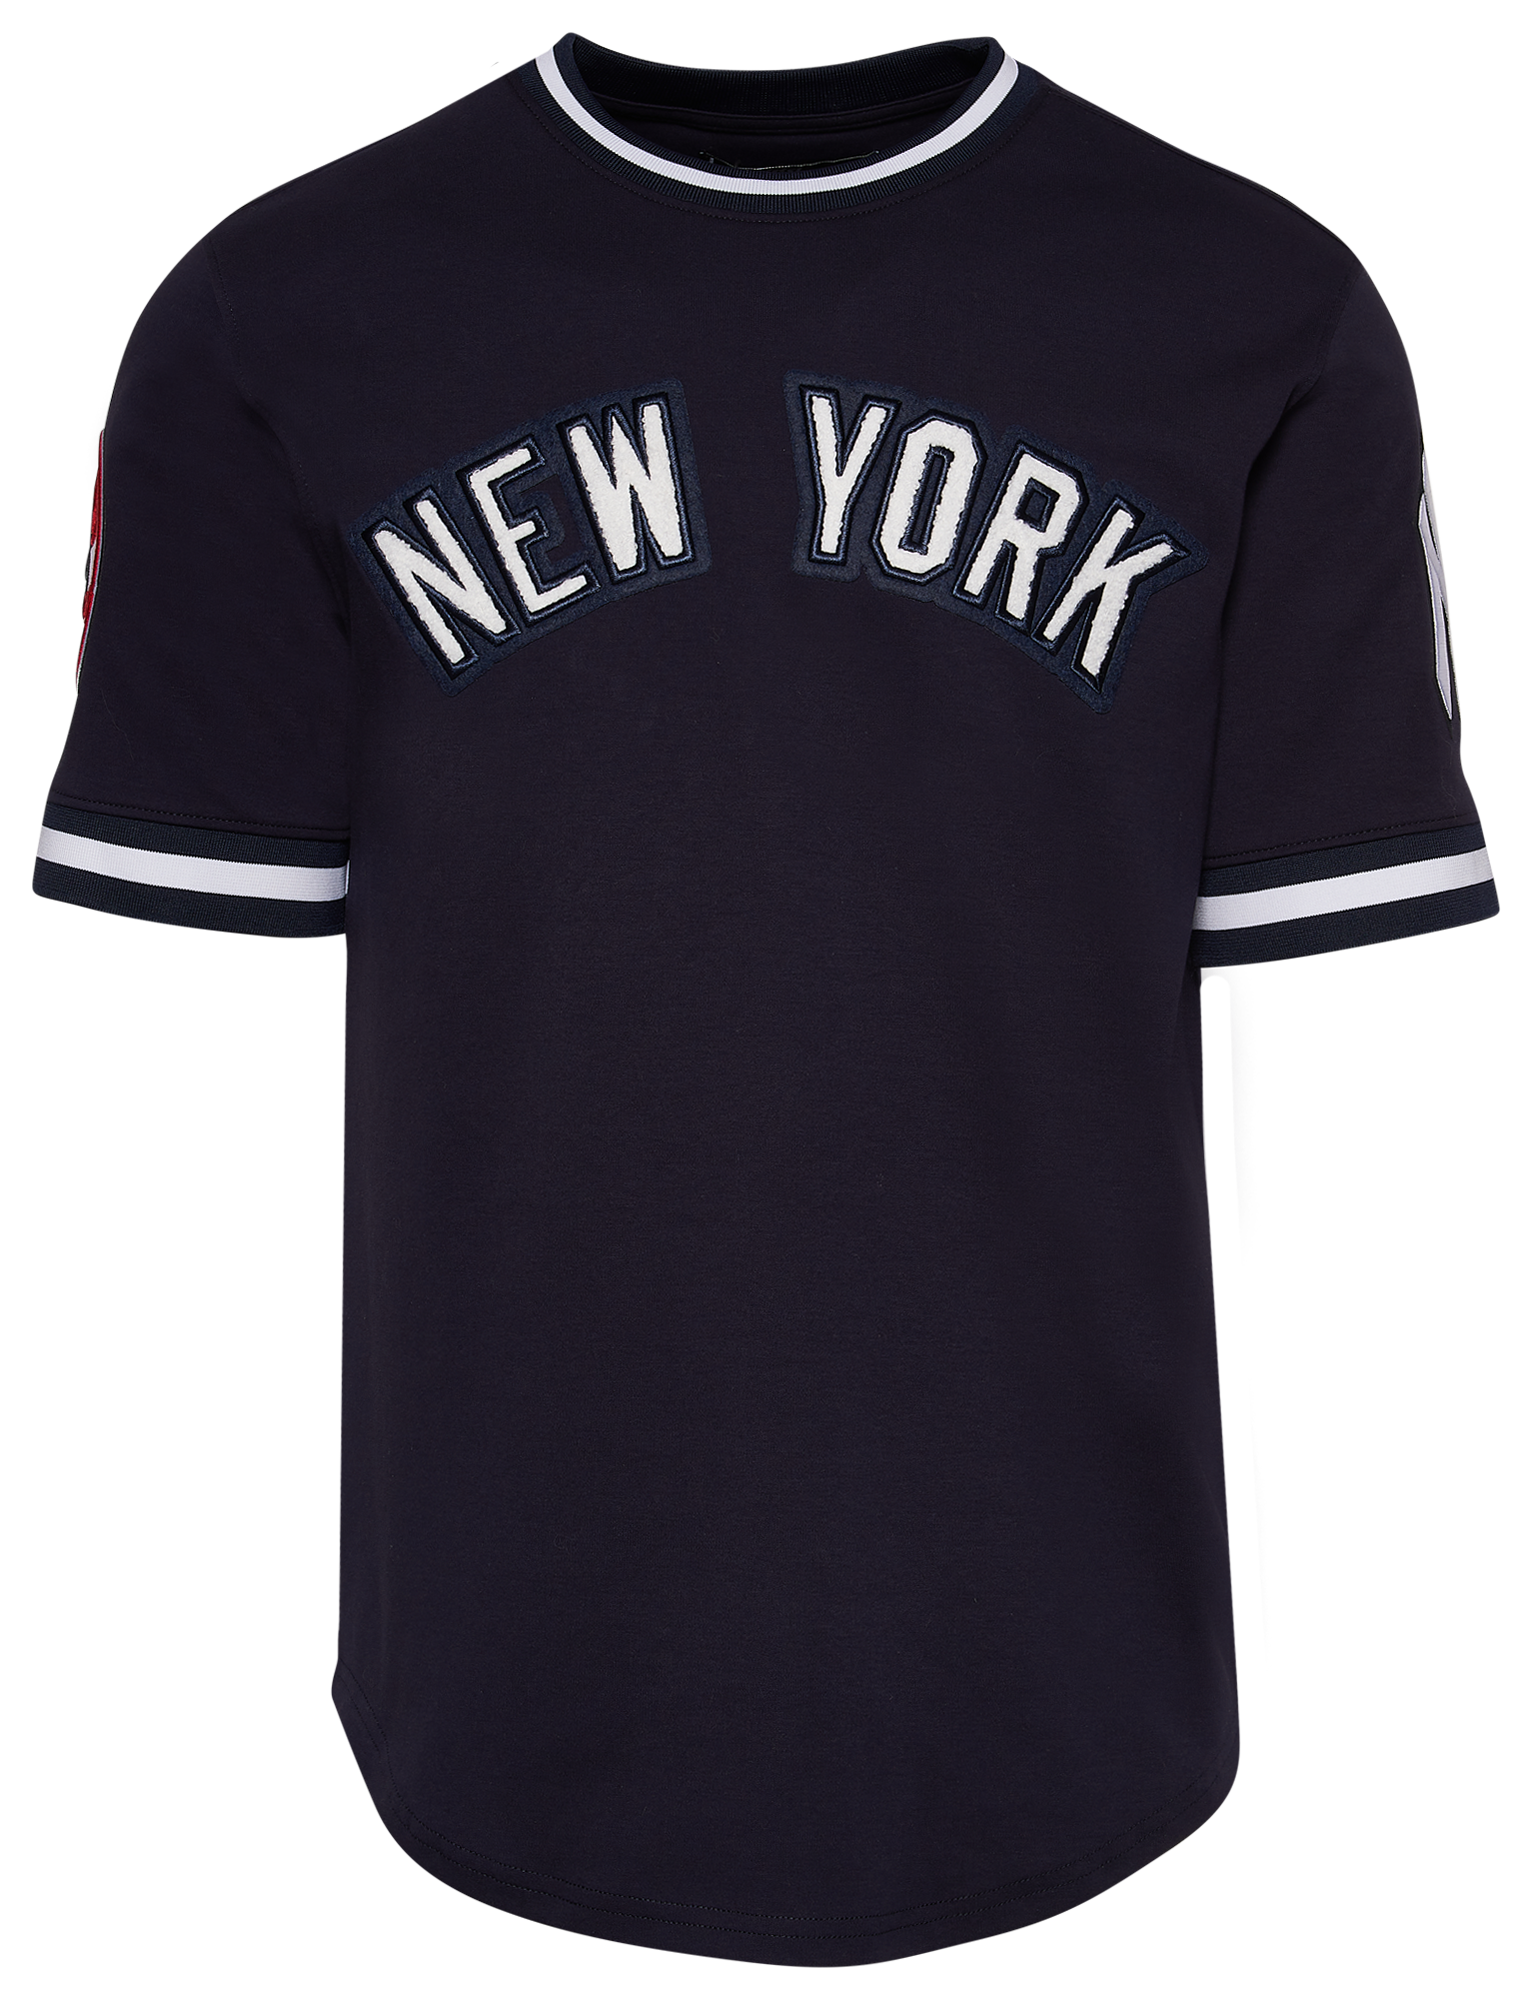 Pro Standard Yankees Team T-Shirt